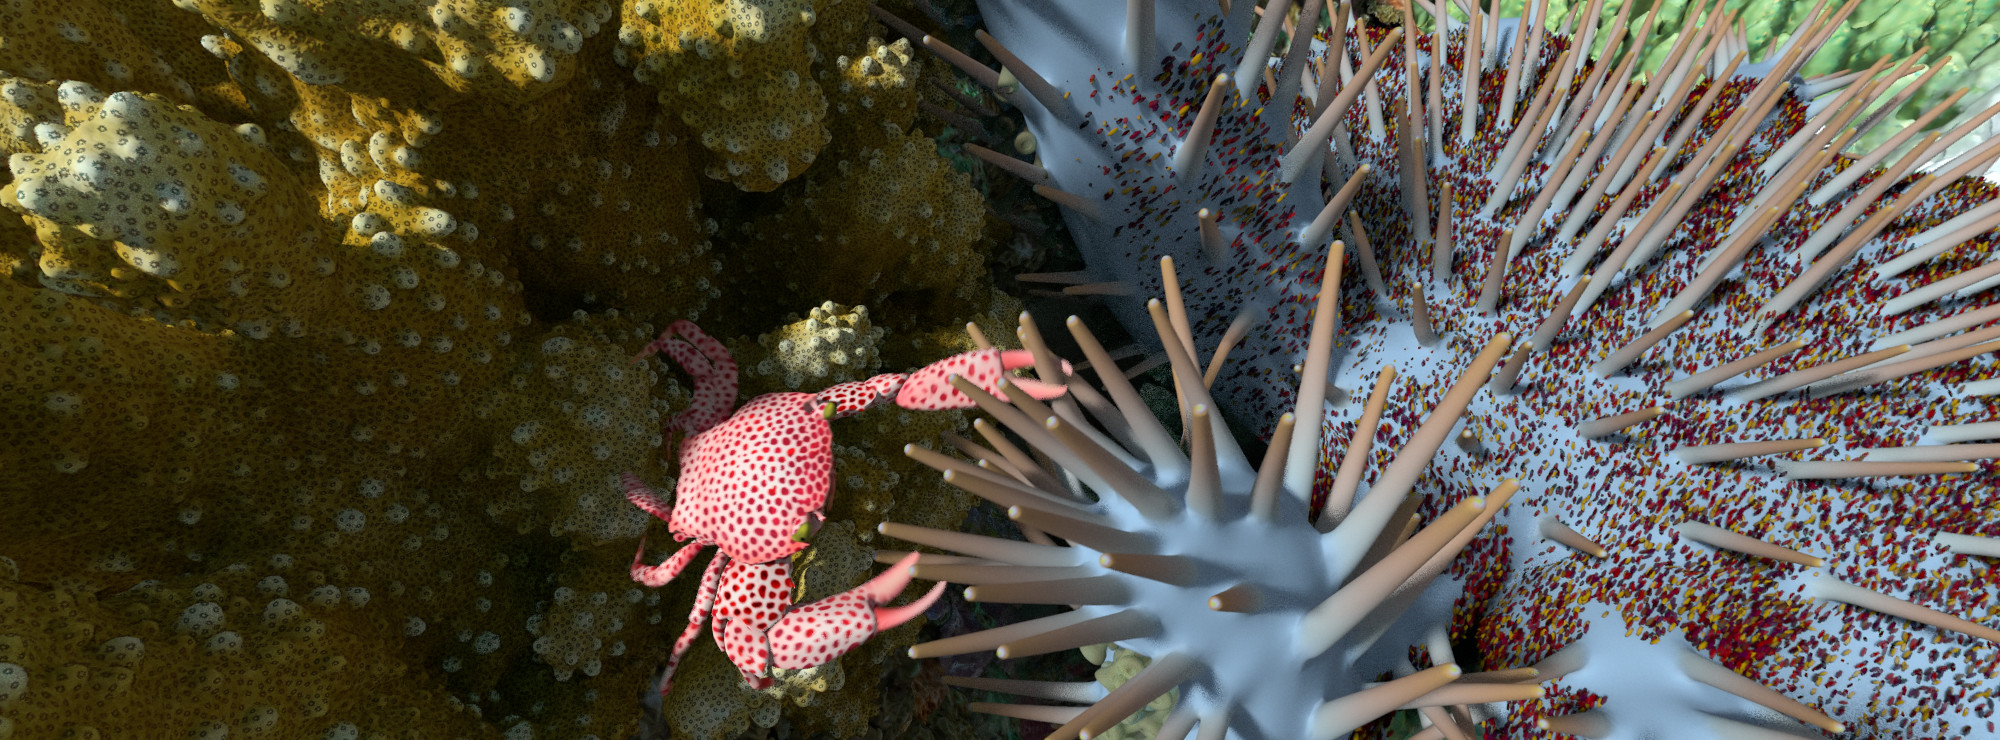 Korallrevens värld.  Bild: California Academy of Sciences.